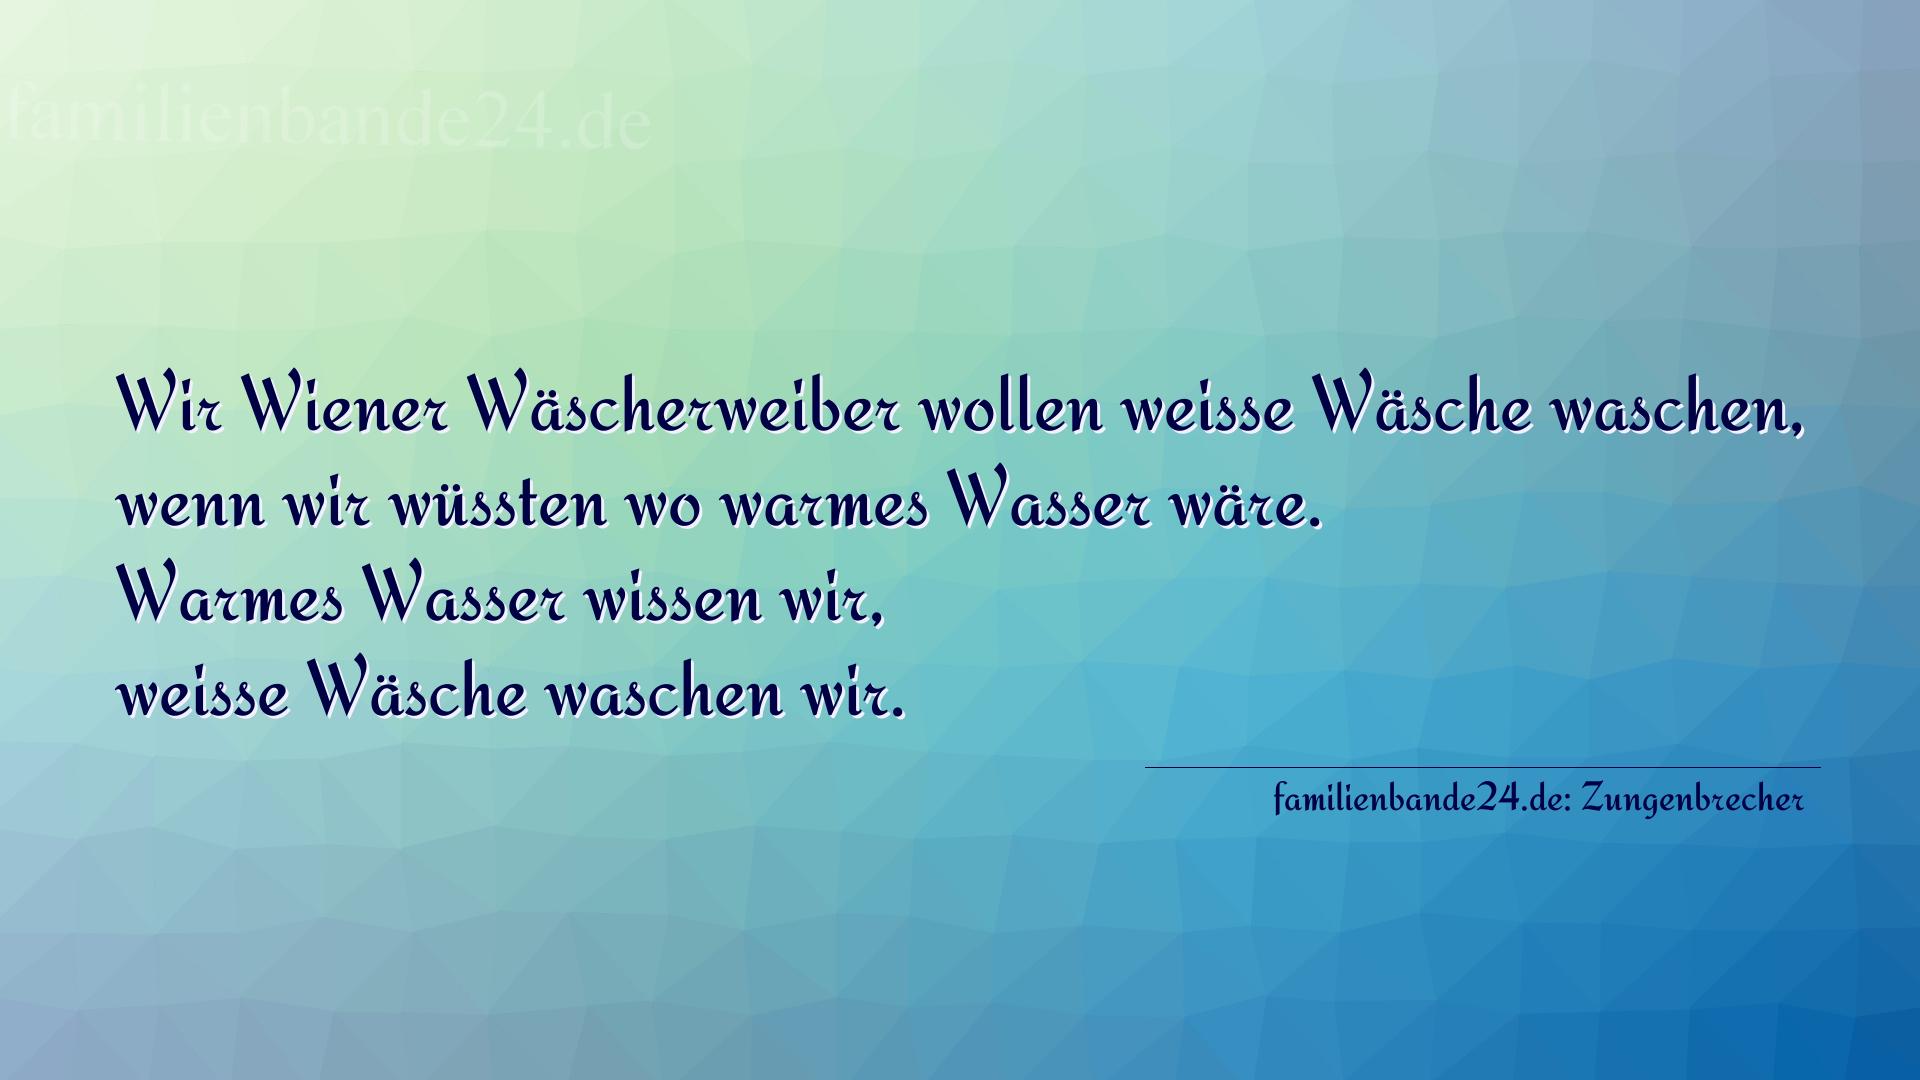 Zungenbrecher Nummer 707: Wir Wiener Wäscherweiber wollen weiße Wäsche waschen, w [...]